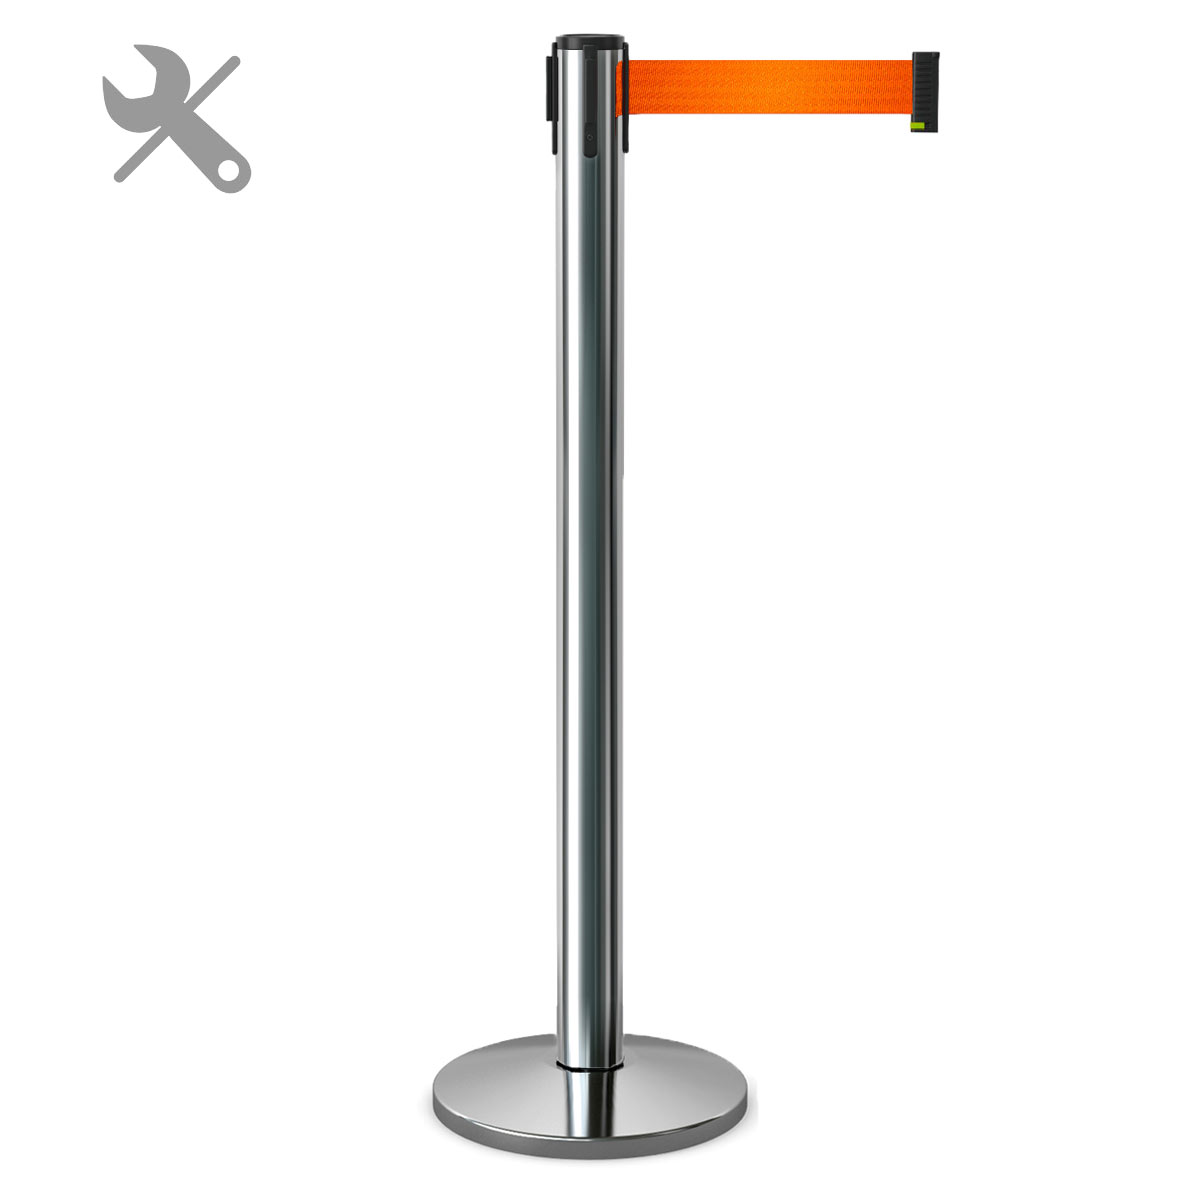 Мобильная стойка с лентой 3,65 метра оранжевая BarrierBelt®️ 81 Professional